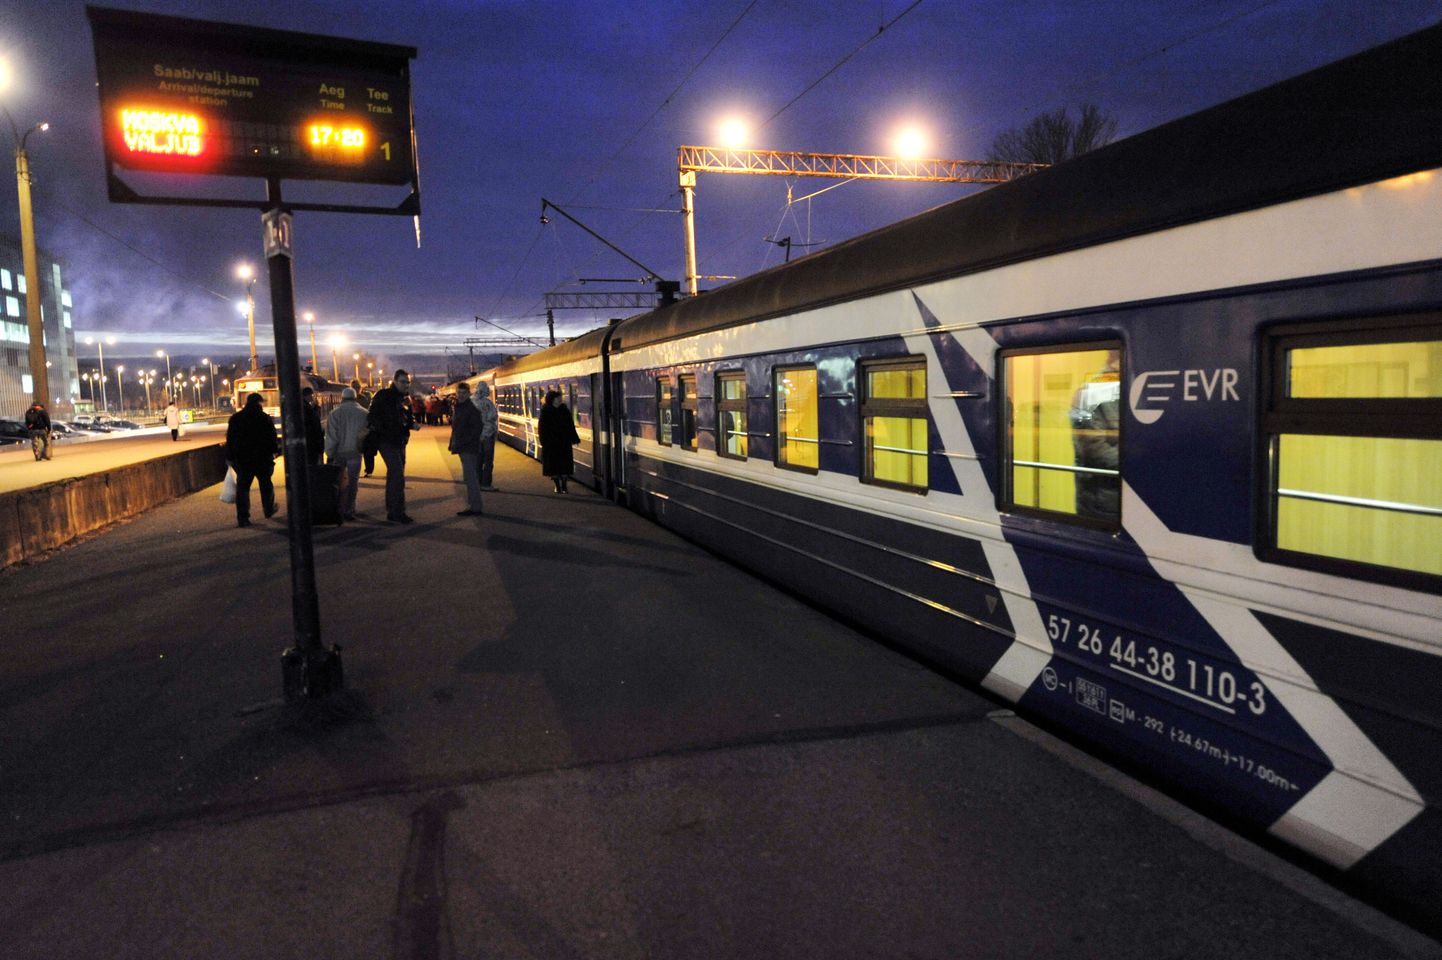 Rail Balticu kiirraudtee on paljude unistus.